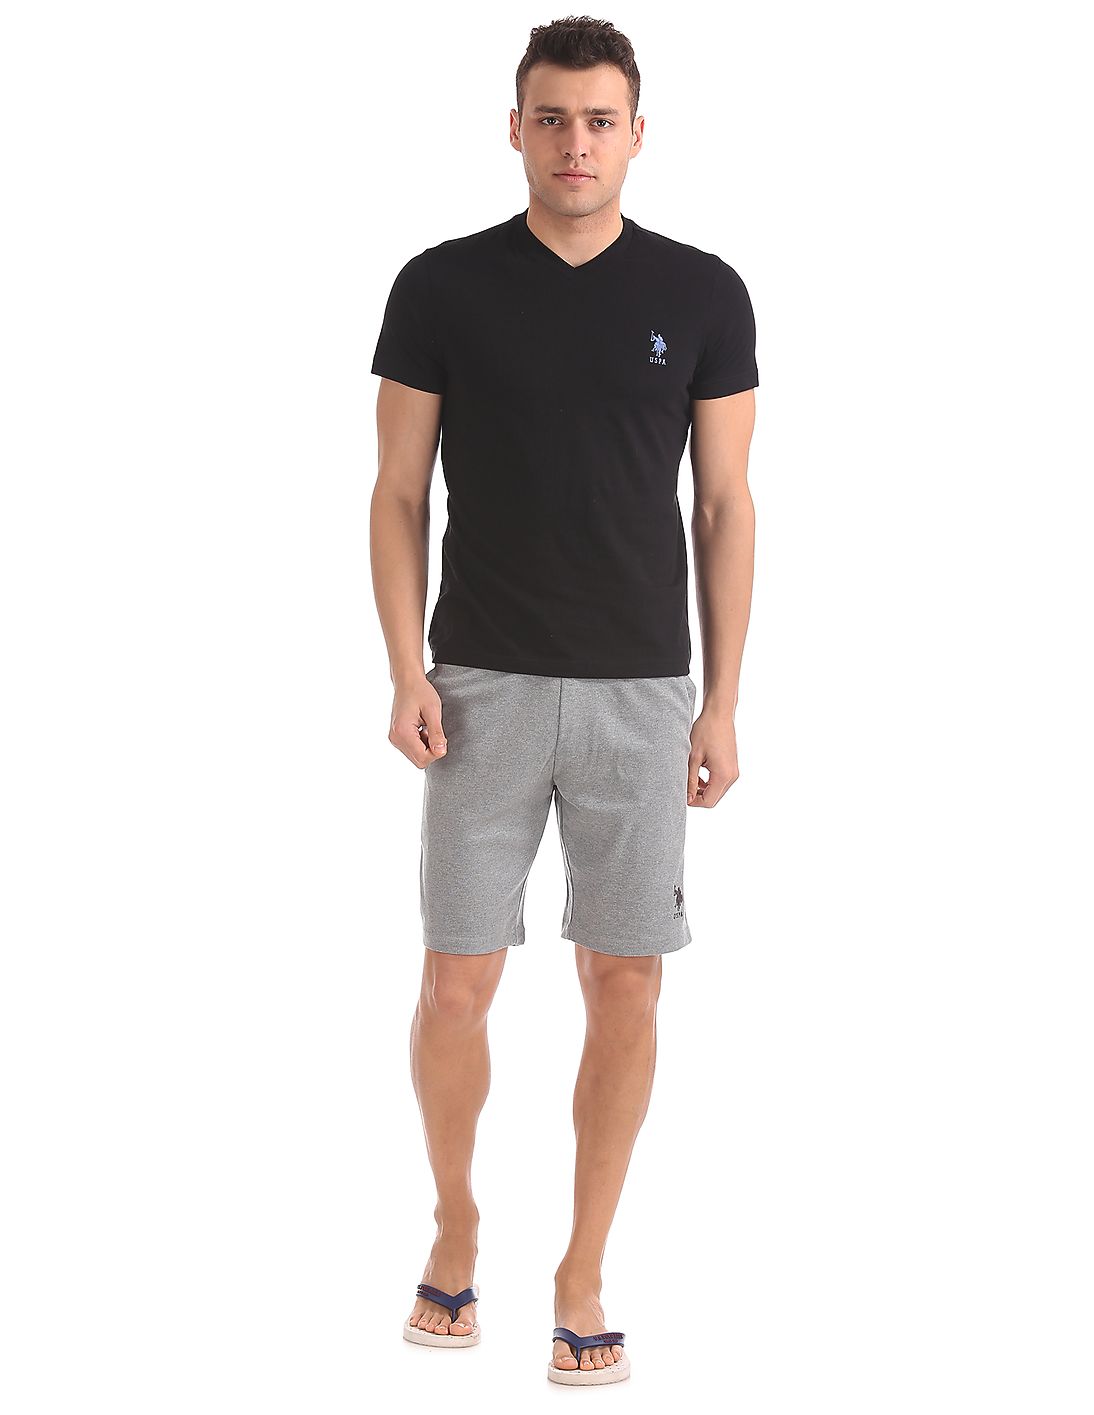 U.S. Polo Assn. Short Sleeve V-Neck T-Shirt Black for men - Stilento